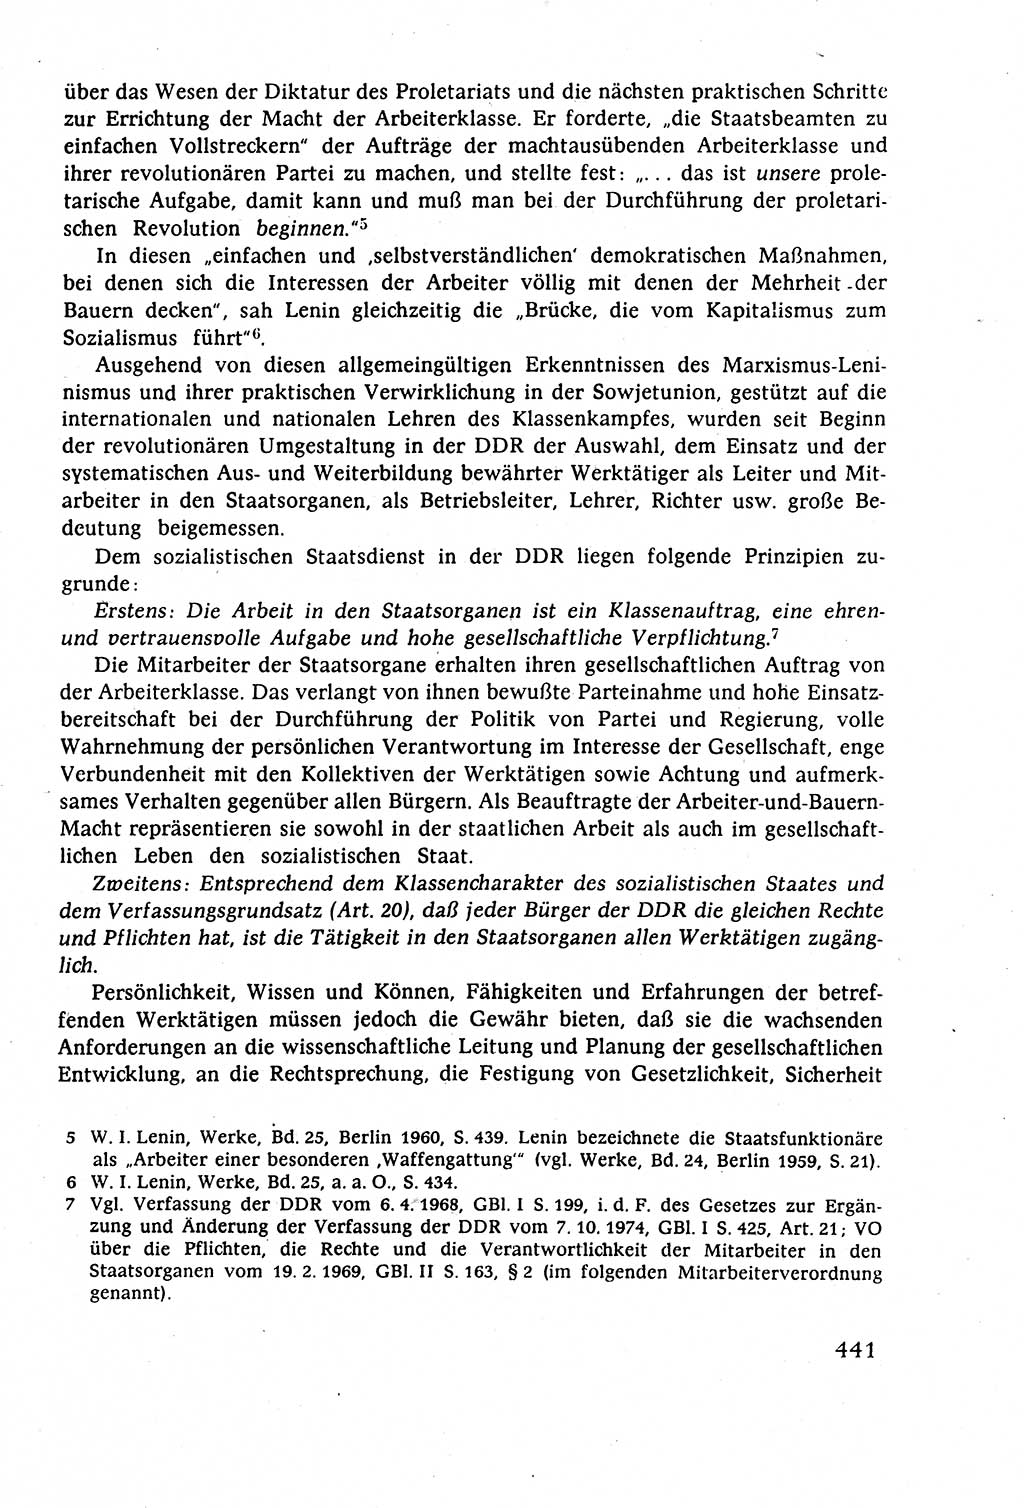 Staatsrecht der DDR (Deutsche Demokratische Republik), Lehrbuch 1977, Seite 441 (St.-R. DDR Lb. 1977, S. 441)